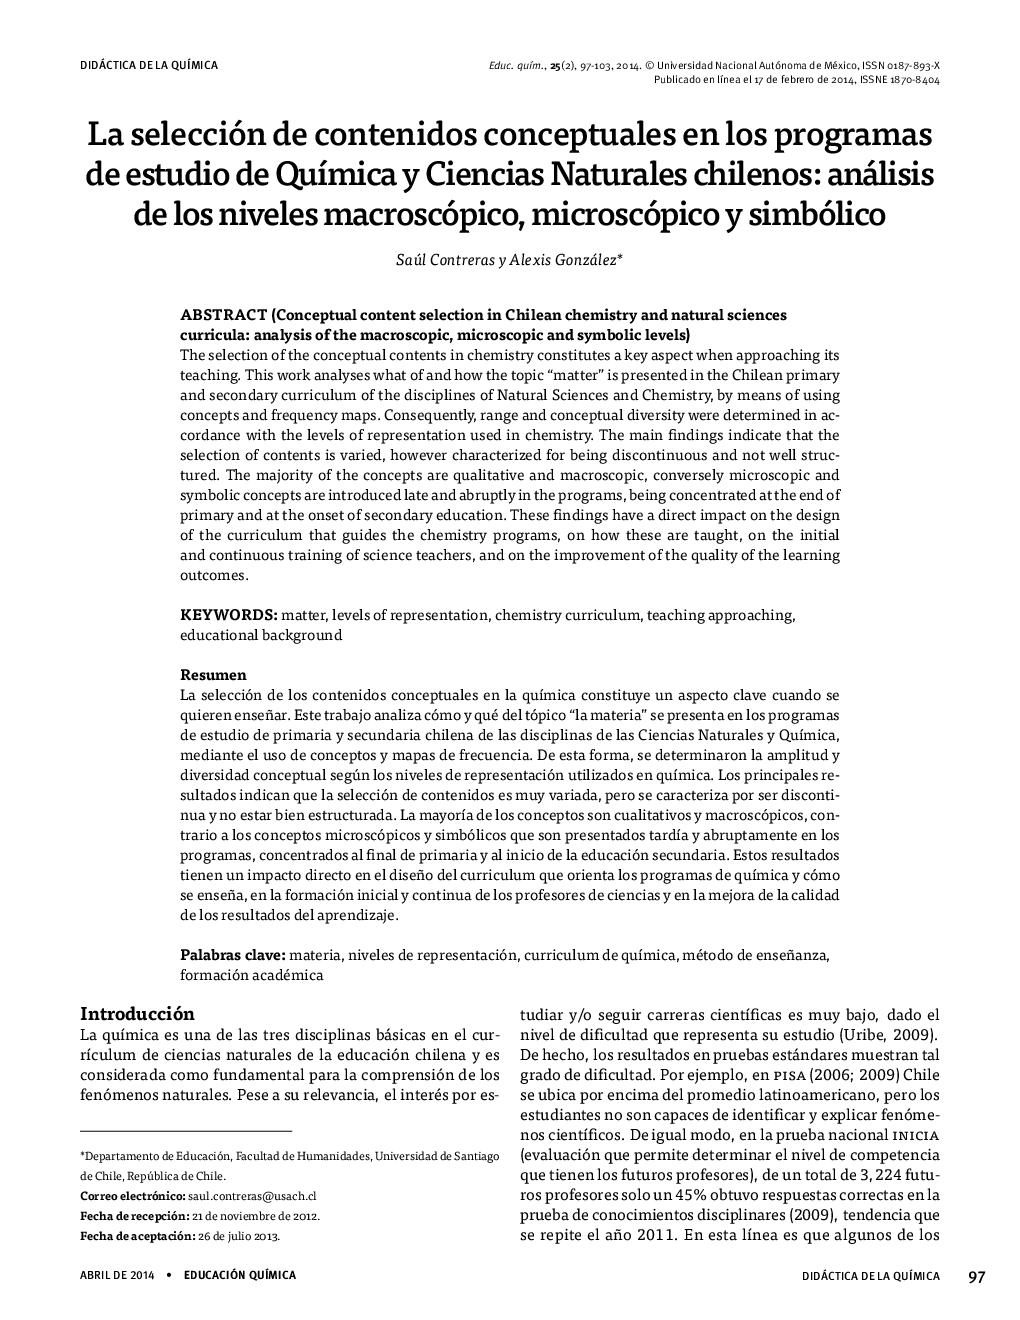 انتخاب محتوای مفهومی در برنامه های مطالعه علوم طبیعی و علوم شیلی: تجزیه و تحلیل سطح ماکروسکوپیک، میکروسکوپیک و نمادین 